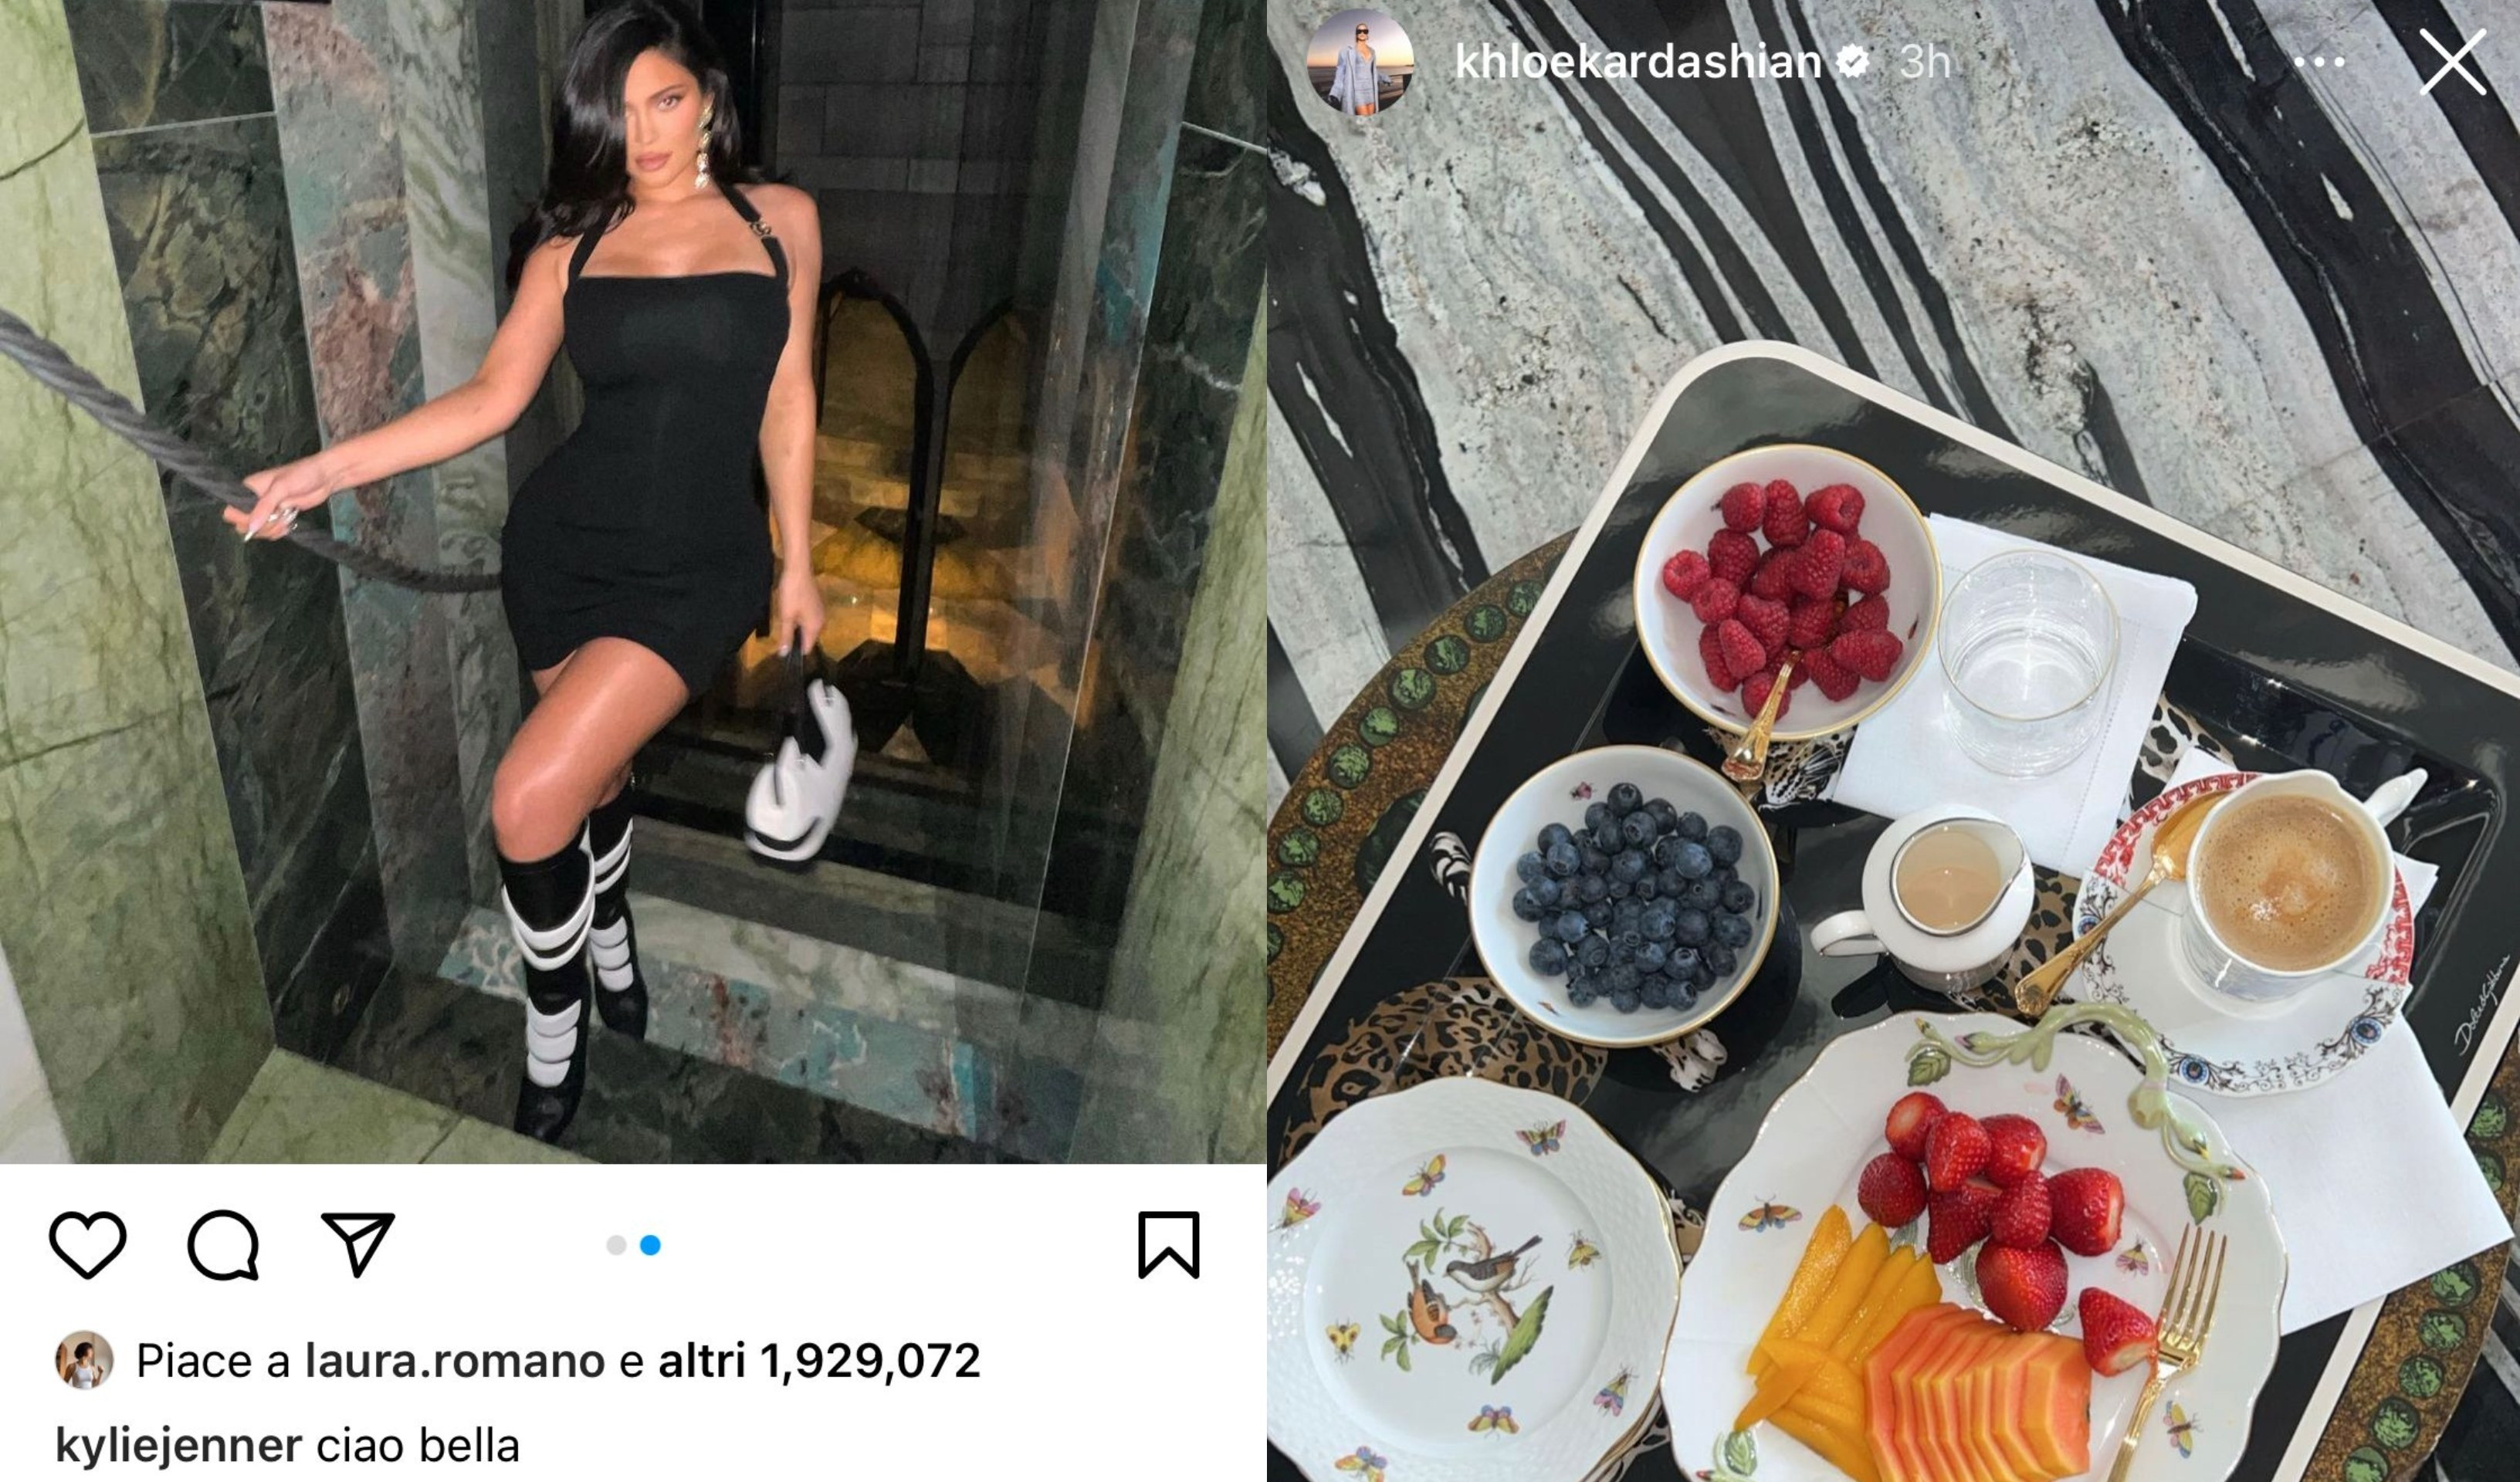 Kardashian a Portofino per il terzo si di Kourtney e Travis, i primi post sui social 